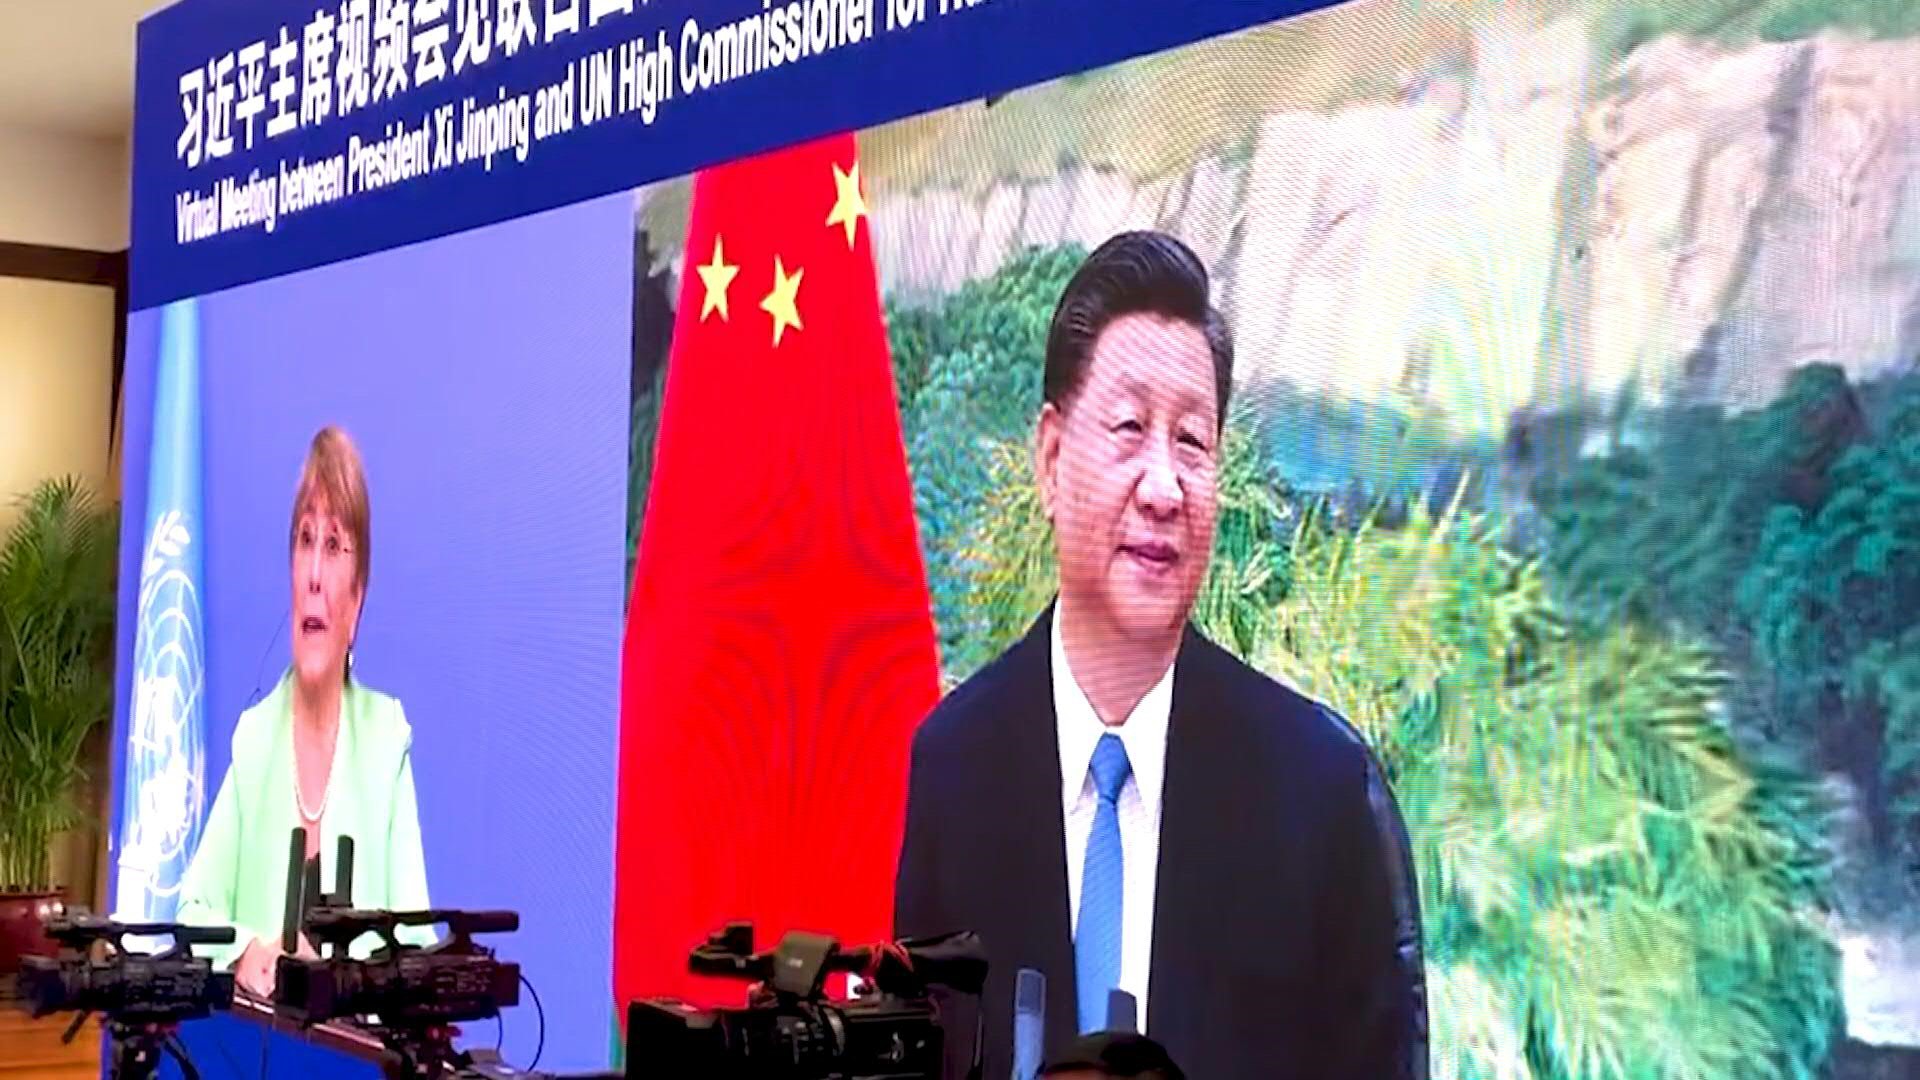 El presidente chino Xi Jinping defendió el miércoles los avances de su país en materia de derechos humanos, tras nuevas filtraciones periodísticas sobre la represión de la minoría musulmana uigur en Xinjiang que coinciden con la visita a esta zona de la Alta Comisionada de la ONU, Michelle Bachelet.